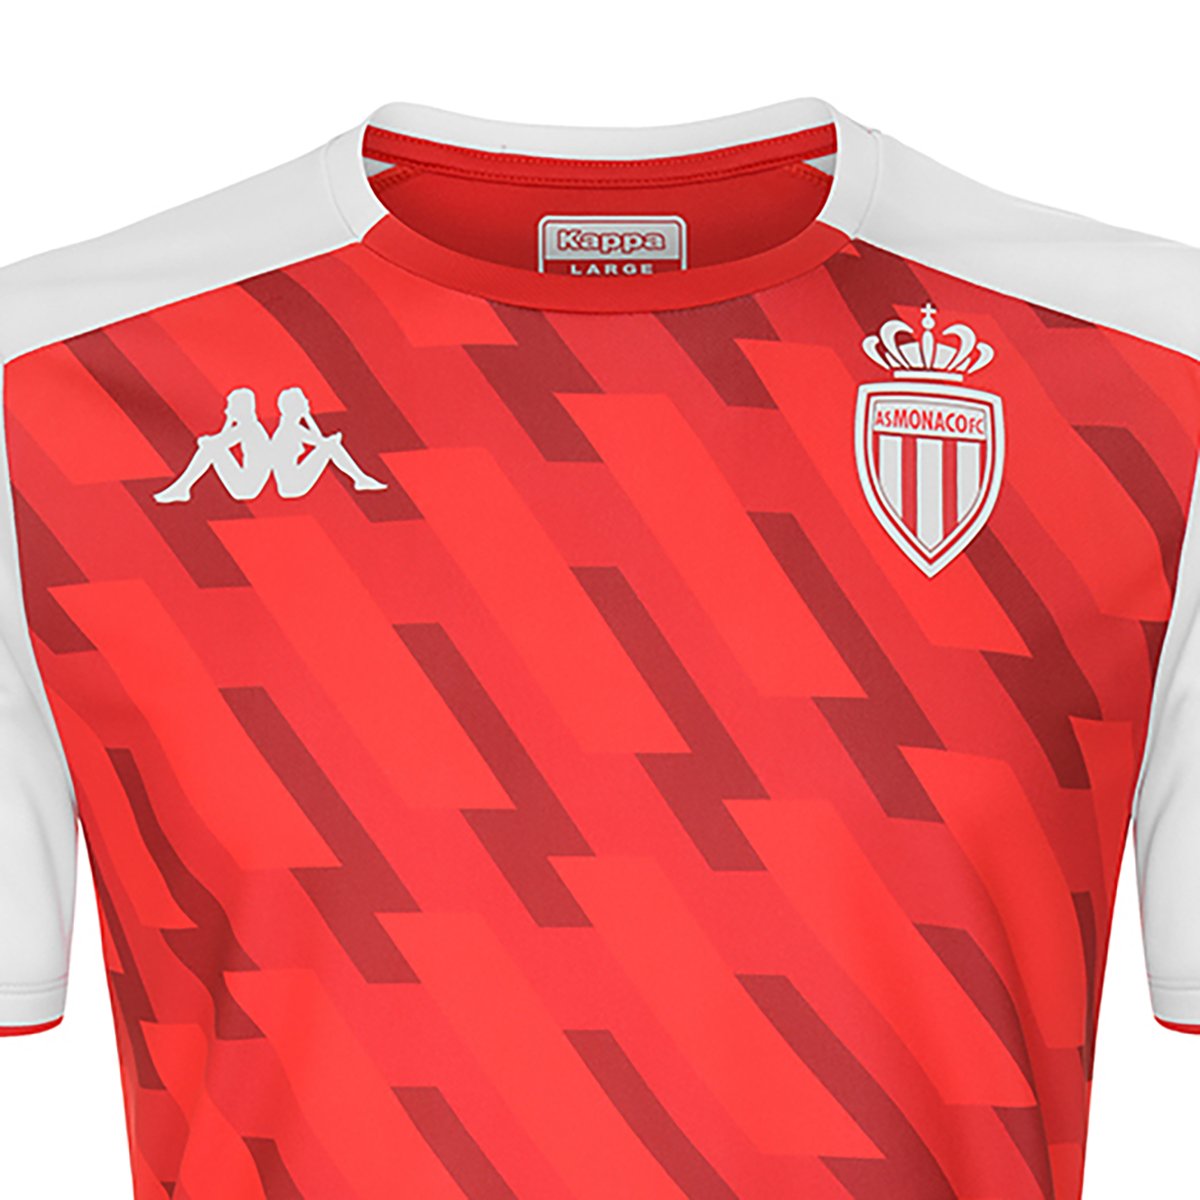 Camiseta Aboupret Pro 5 AS Monaco niño Rojo - Imagen 3